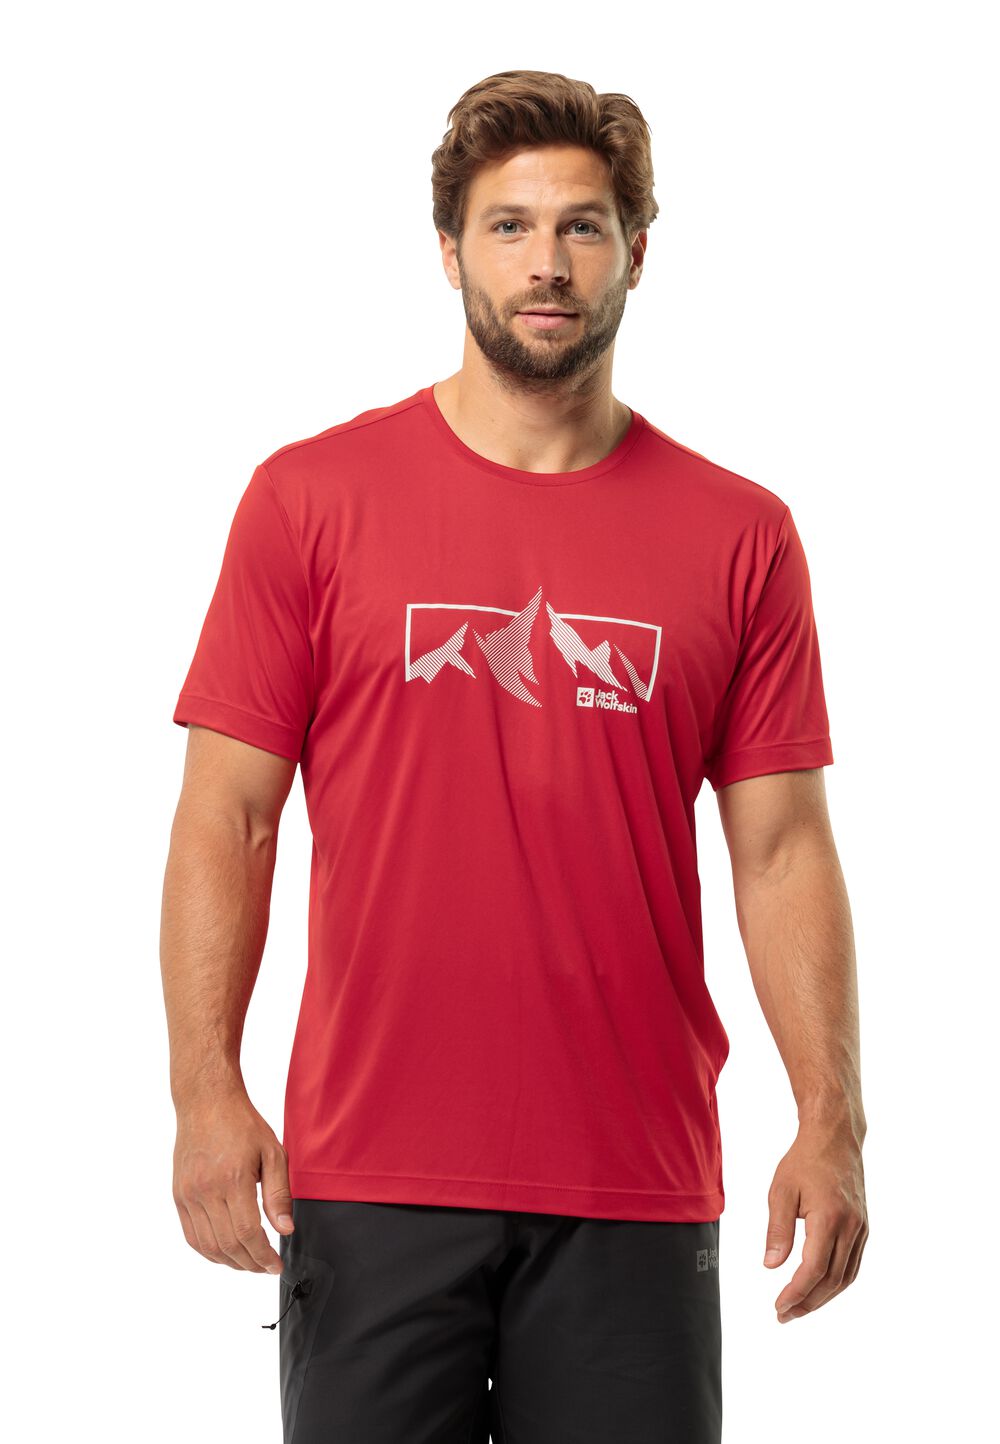 Jack Wolfskin Funktionsshirt Herren Peak Graphic T-Shirt Men XL rot red glow von Jack Wolfskin